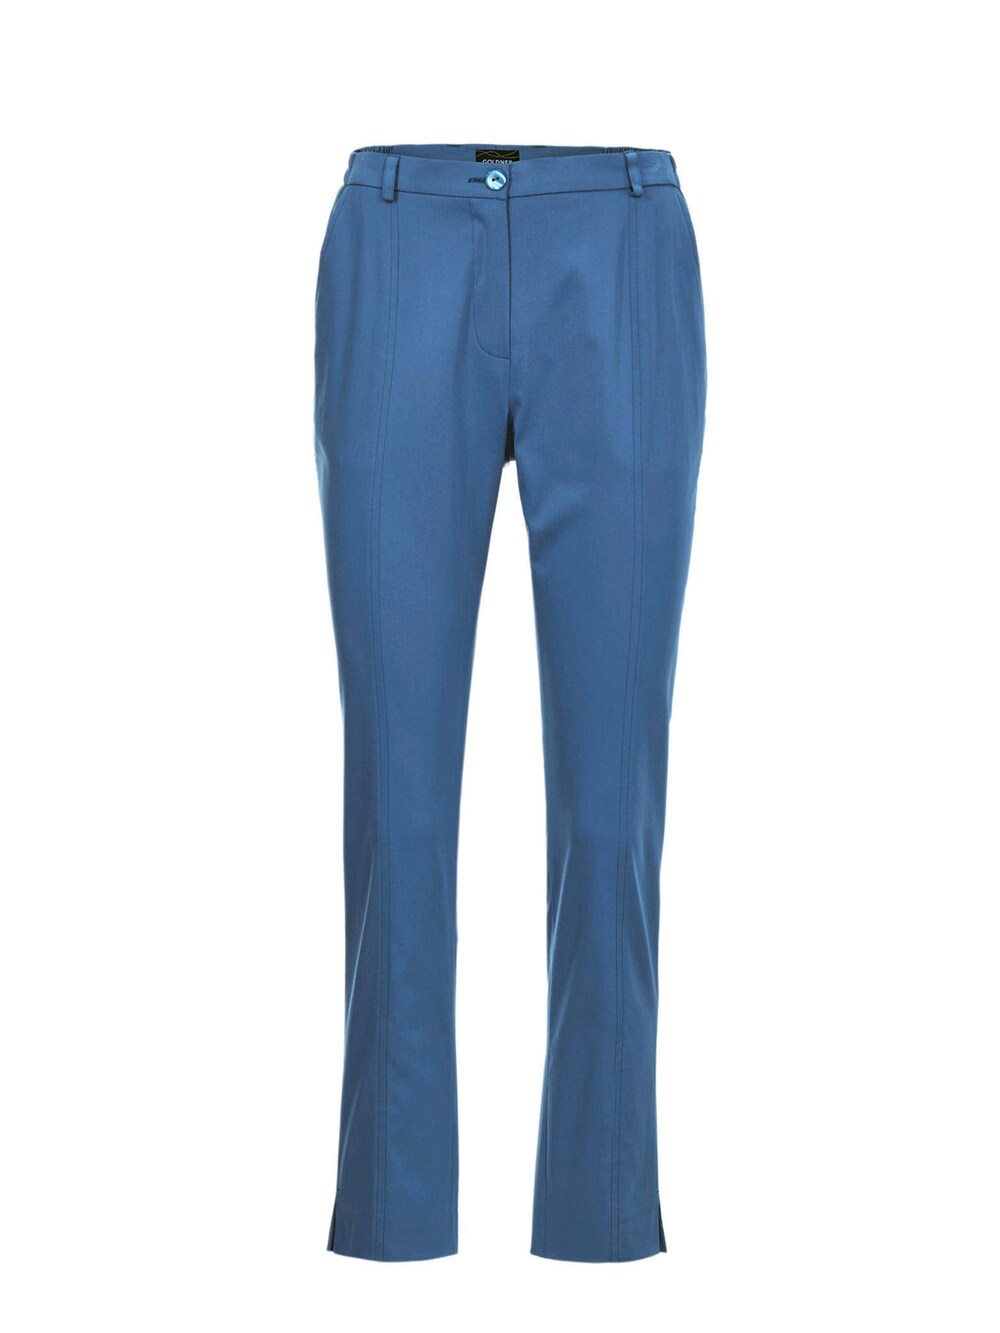 Обычные плиссированные брюки Goldner Anna, синий обычные брюки goldner морской синий